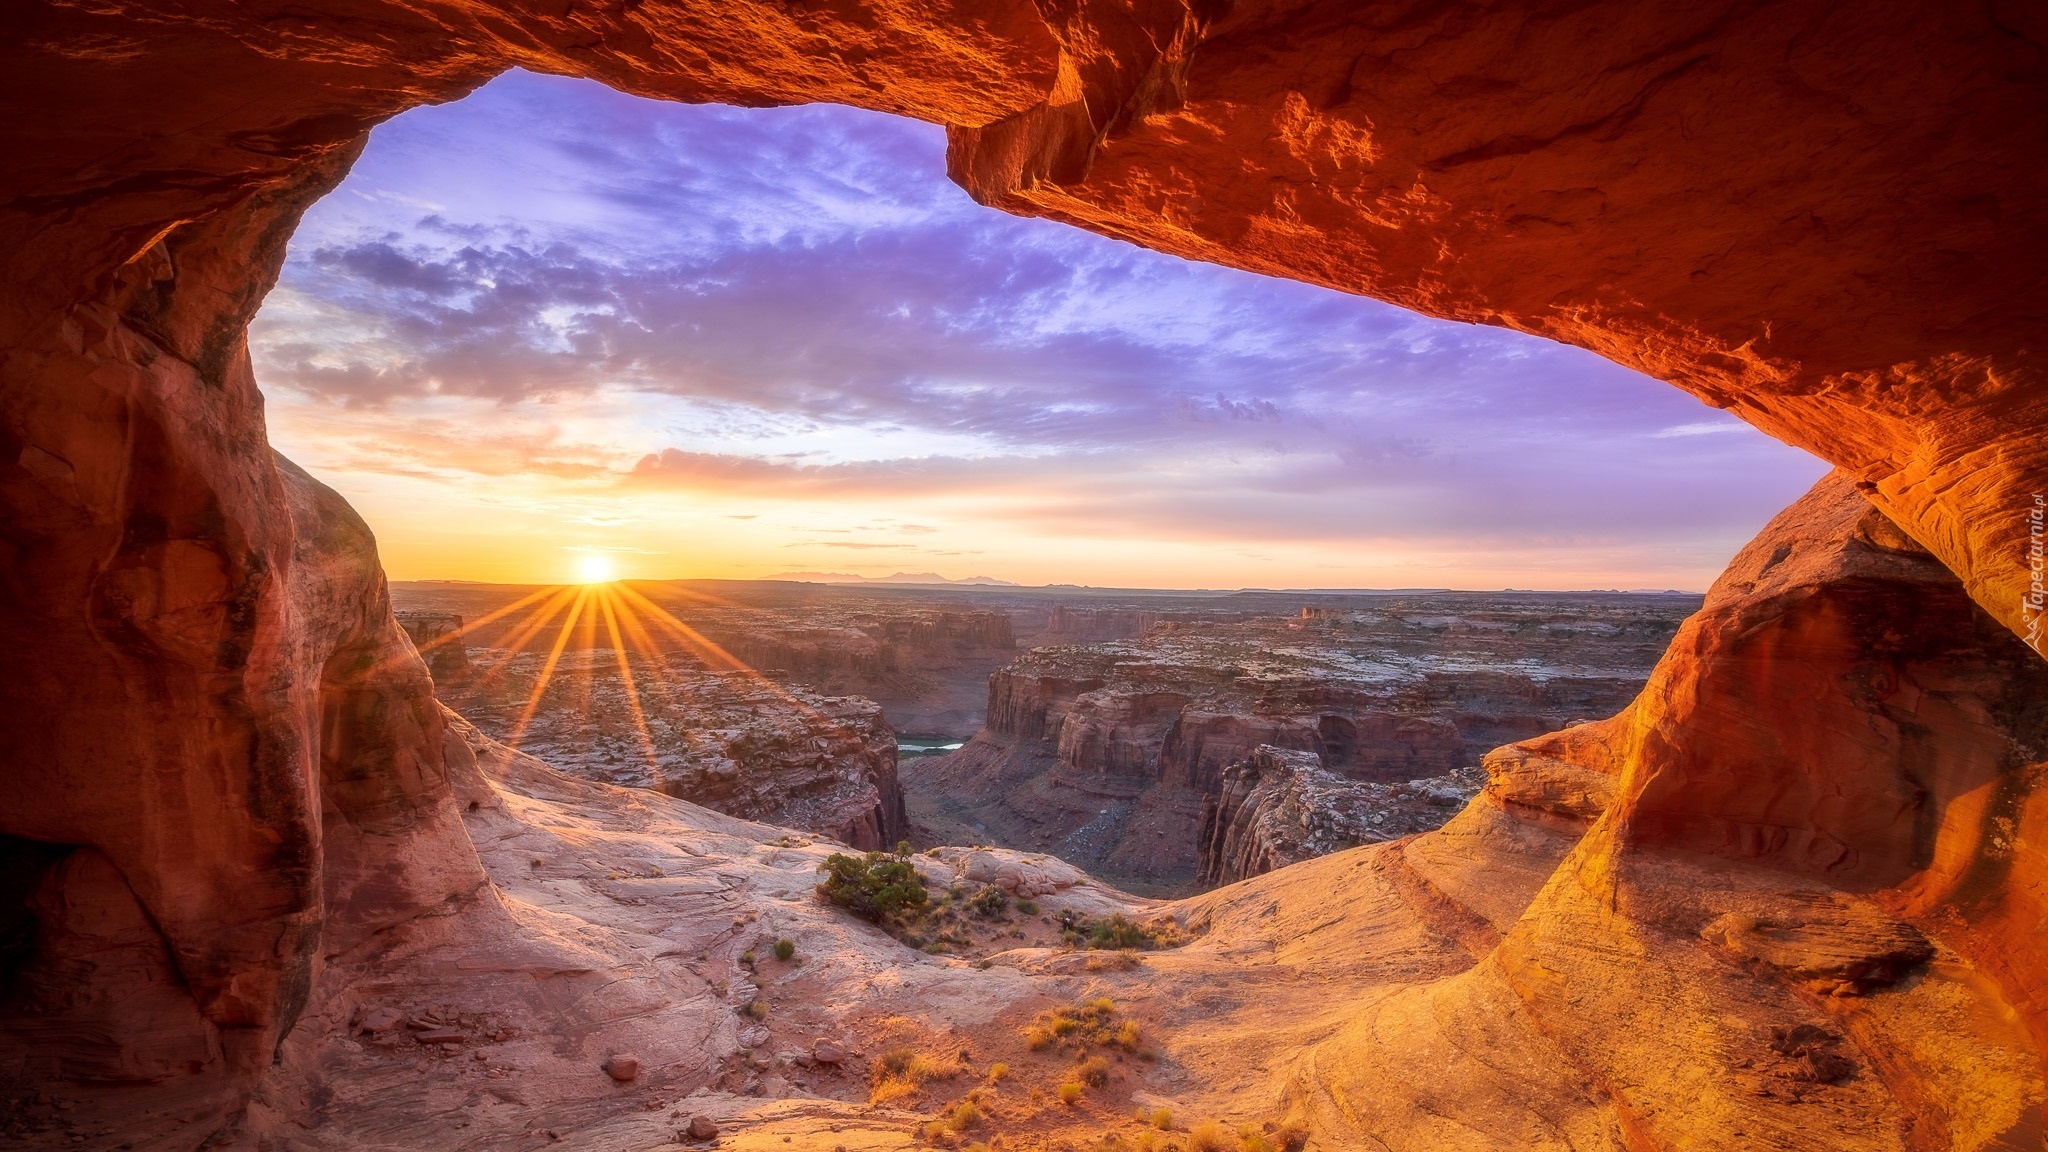 Park Narodowy Canyonlands, Kanion, Skały, Łuk skalny, Promienie słońca, Stan Utah, Stany Zjednoczone